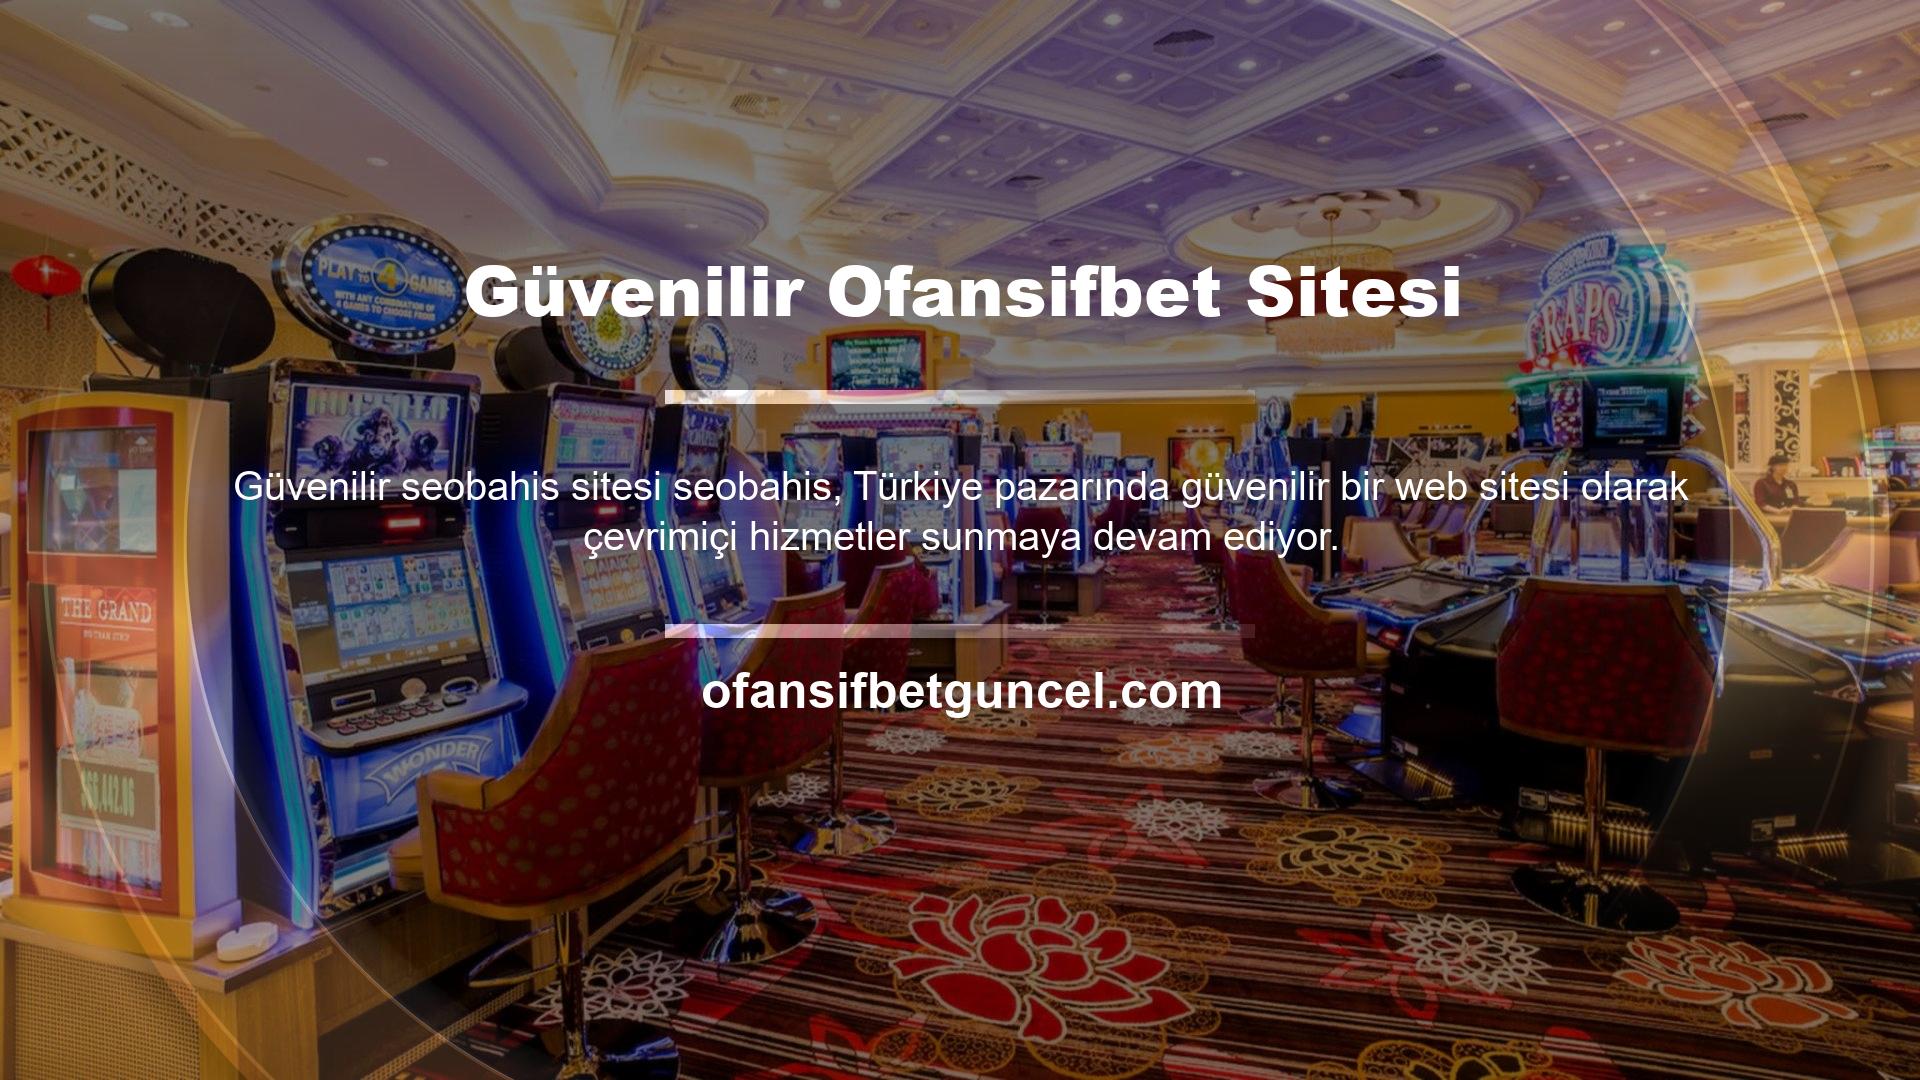 Bu web sitesi, Türkiye pazarında casino hizmetleri sunmaya başlamıştır ve halen en güvenilir, güvenli ve karlı çevrimiçi elektronik platform ve casino sitesini sunmaktadır